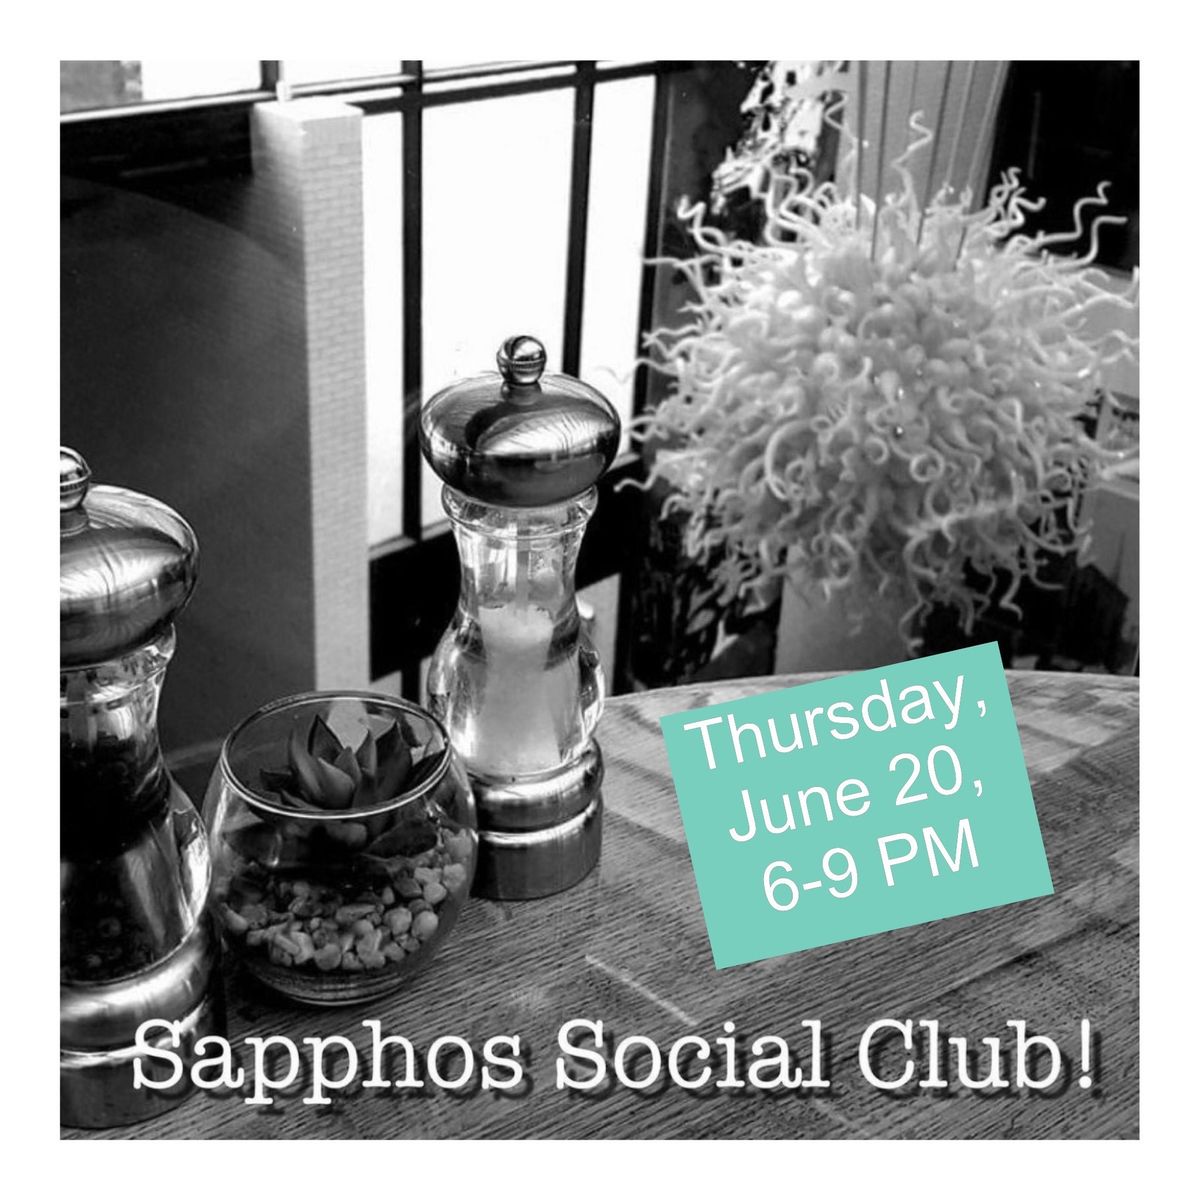 Sapphos Social Club